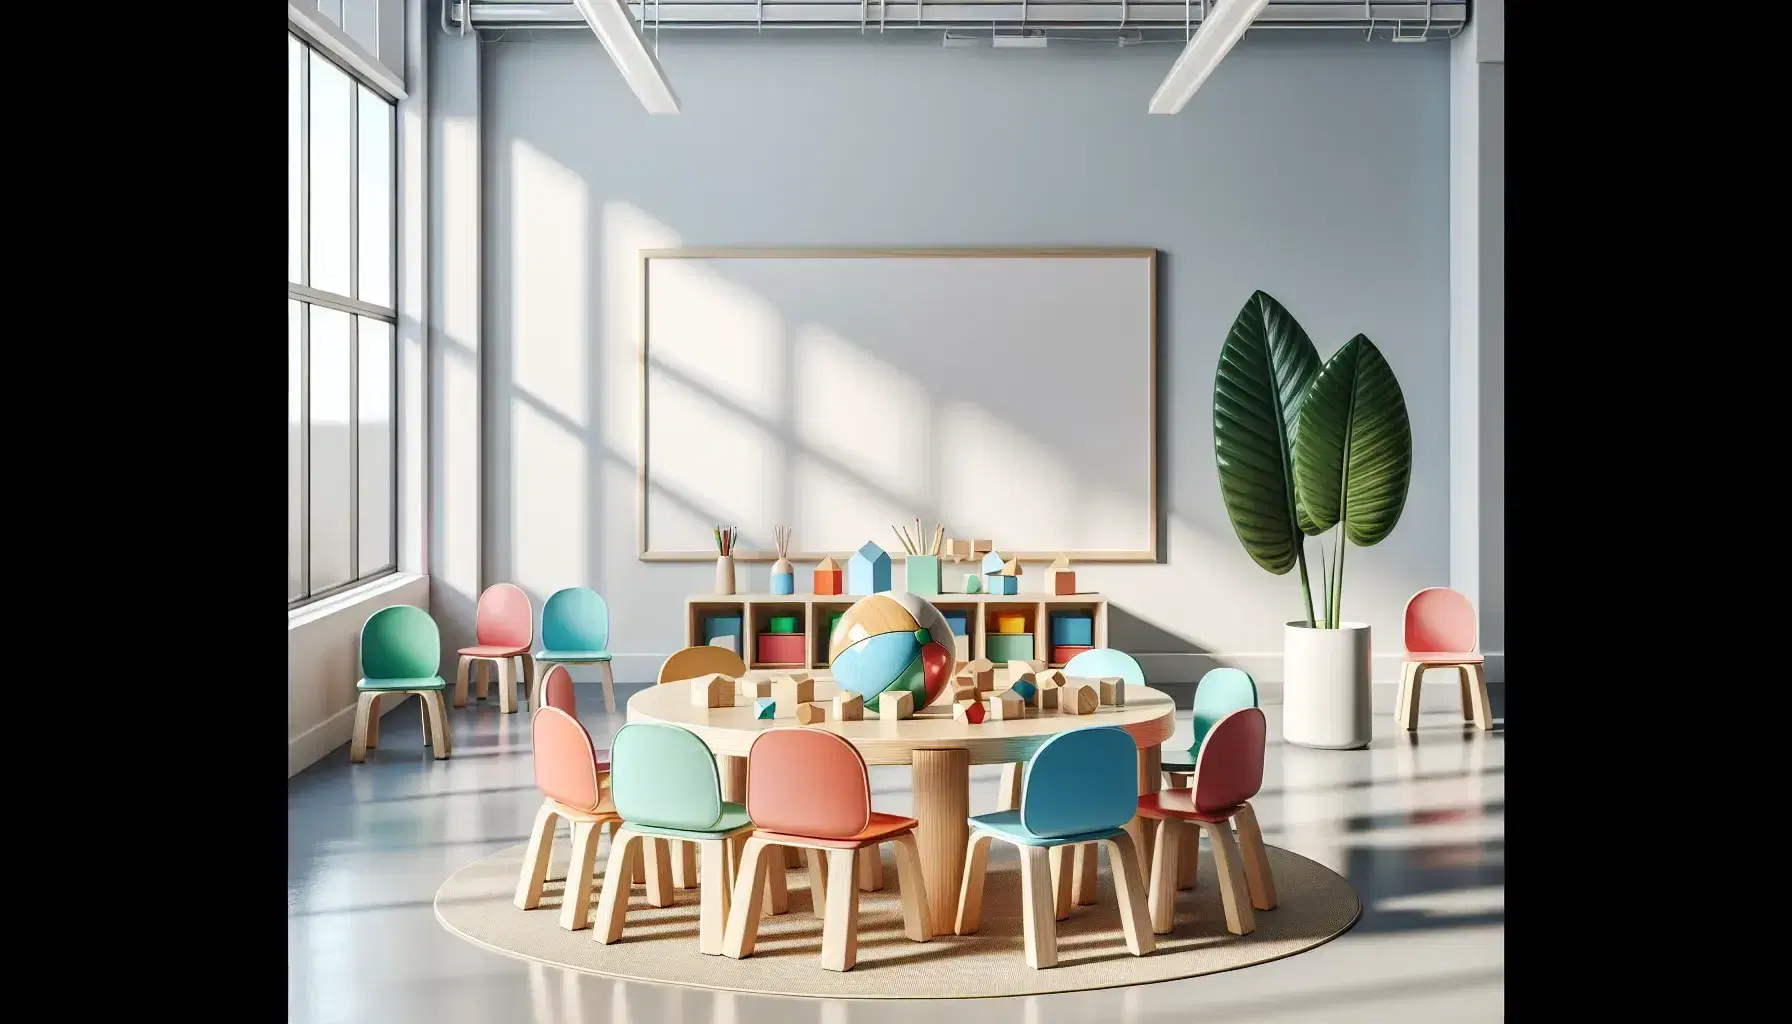 Aula escolar colorida con mesa redonda de madera y sillas plásticas multicolores, bloques educativos, formas geométricas y plantas, bajo luz natural.